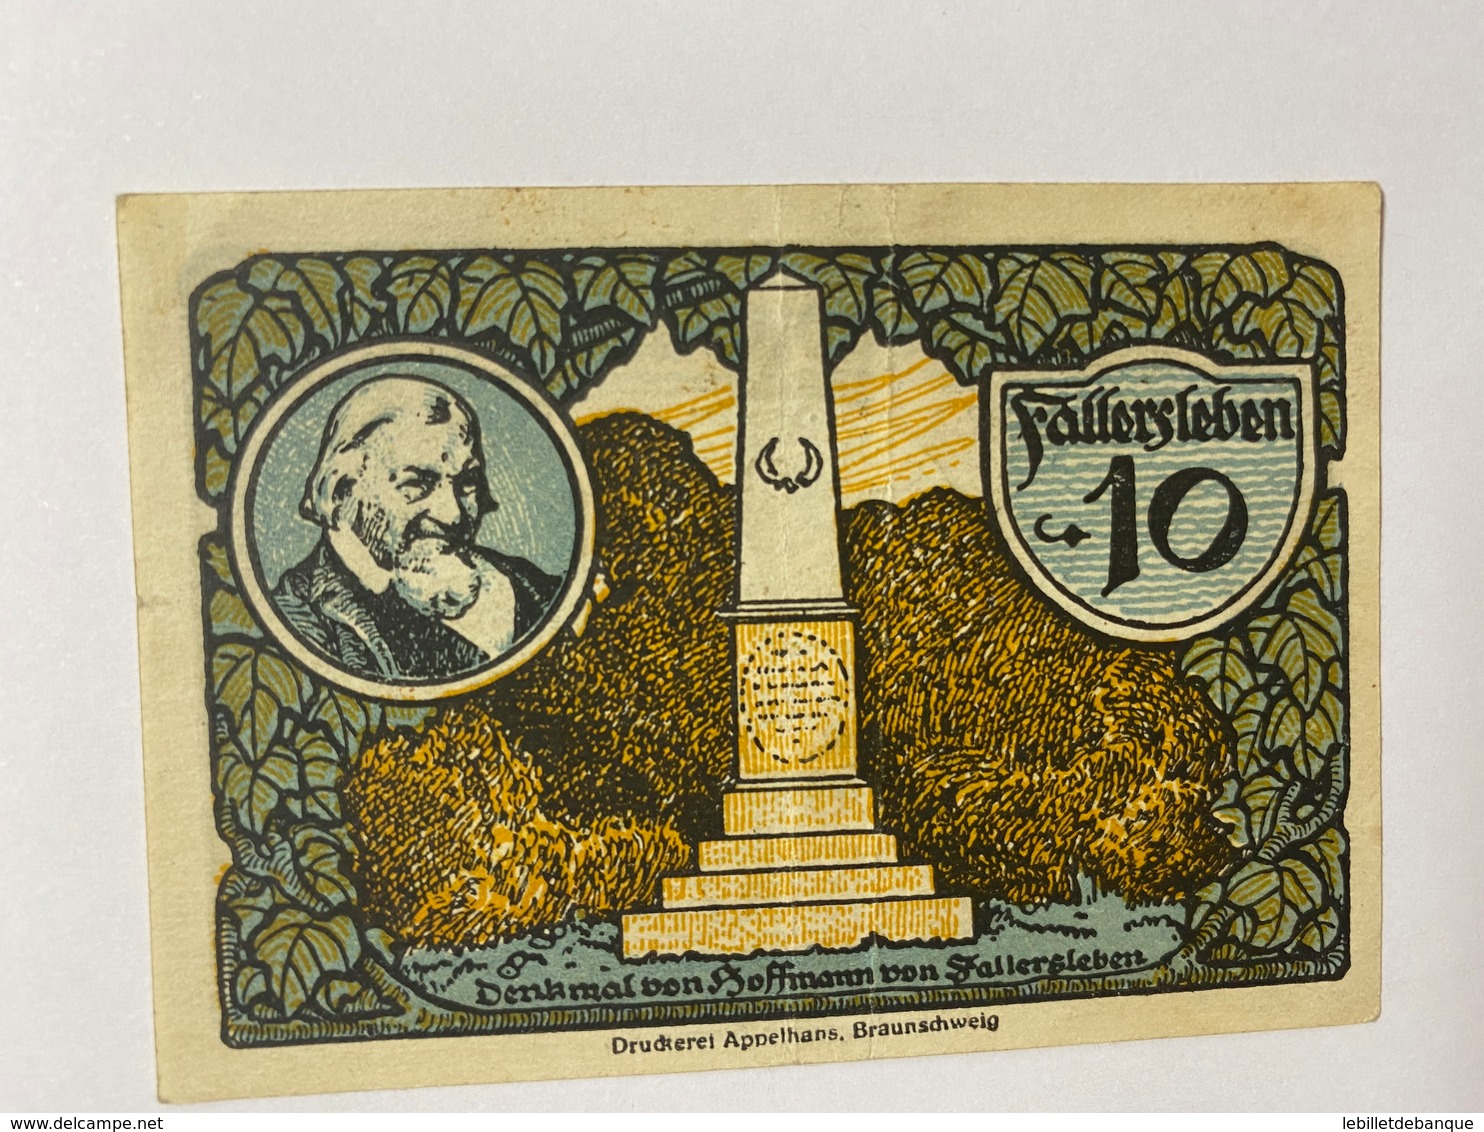 Allemagne Notgeld Fallersleben 10 Pfennig - Collections